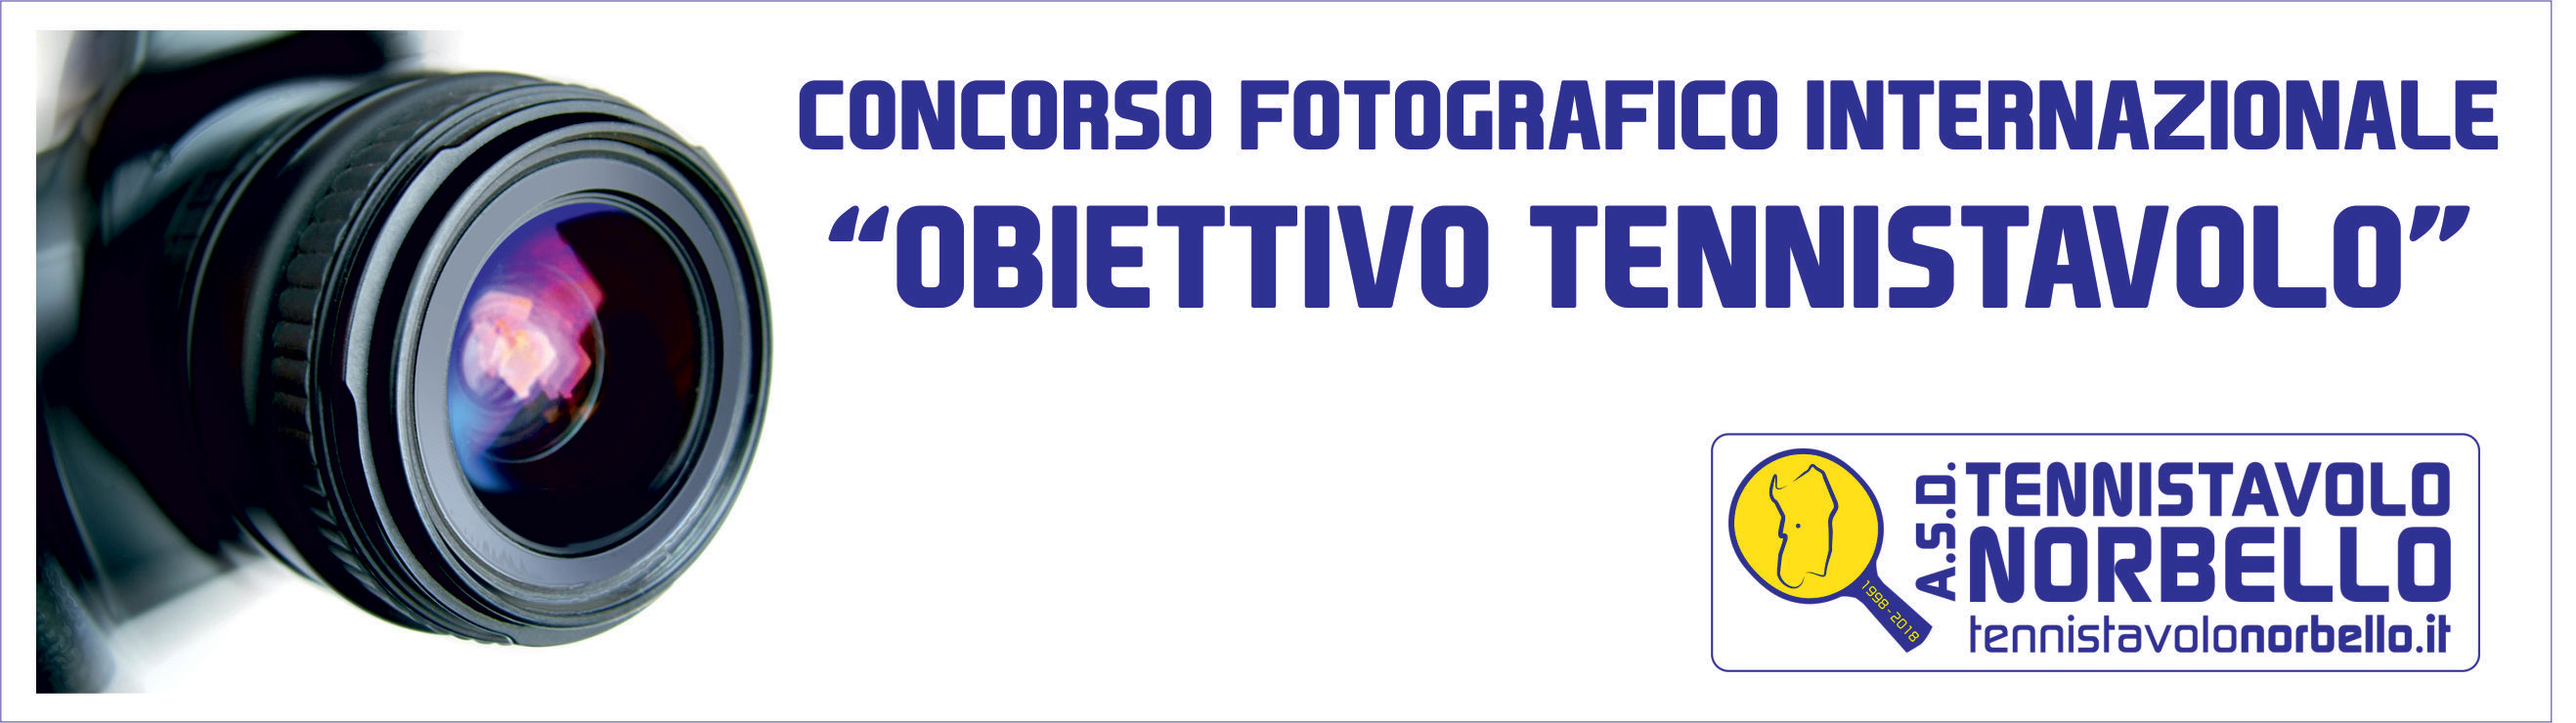 Banner Concorso Fotografico Internazionale Obiettivo Tennistavolo